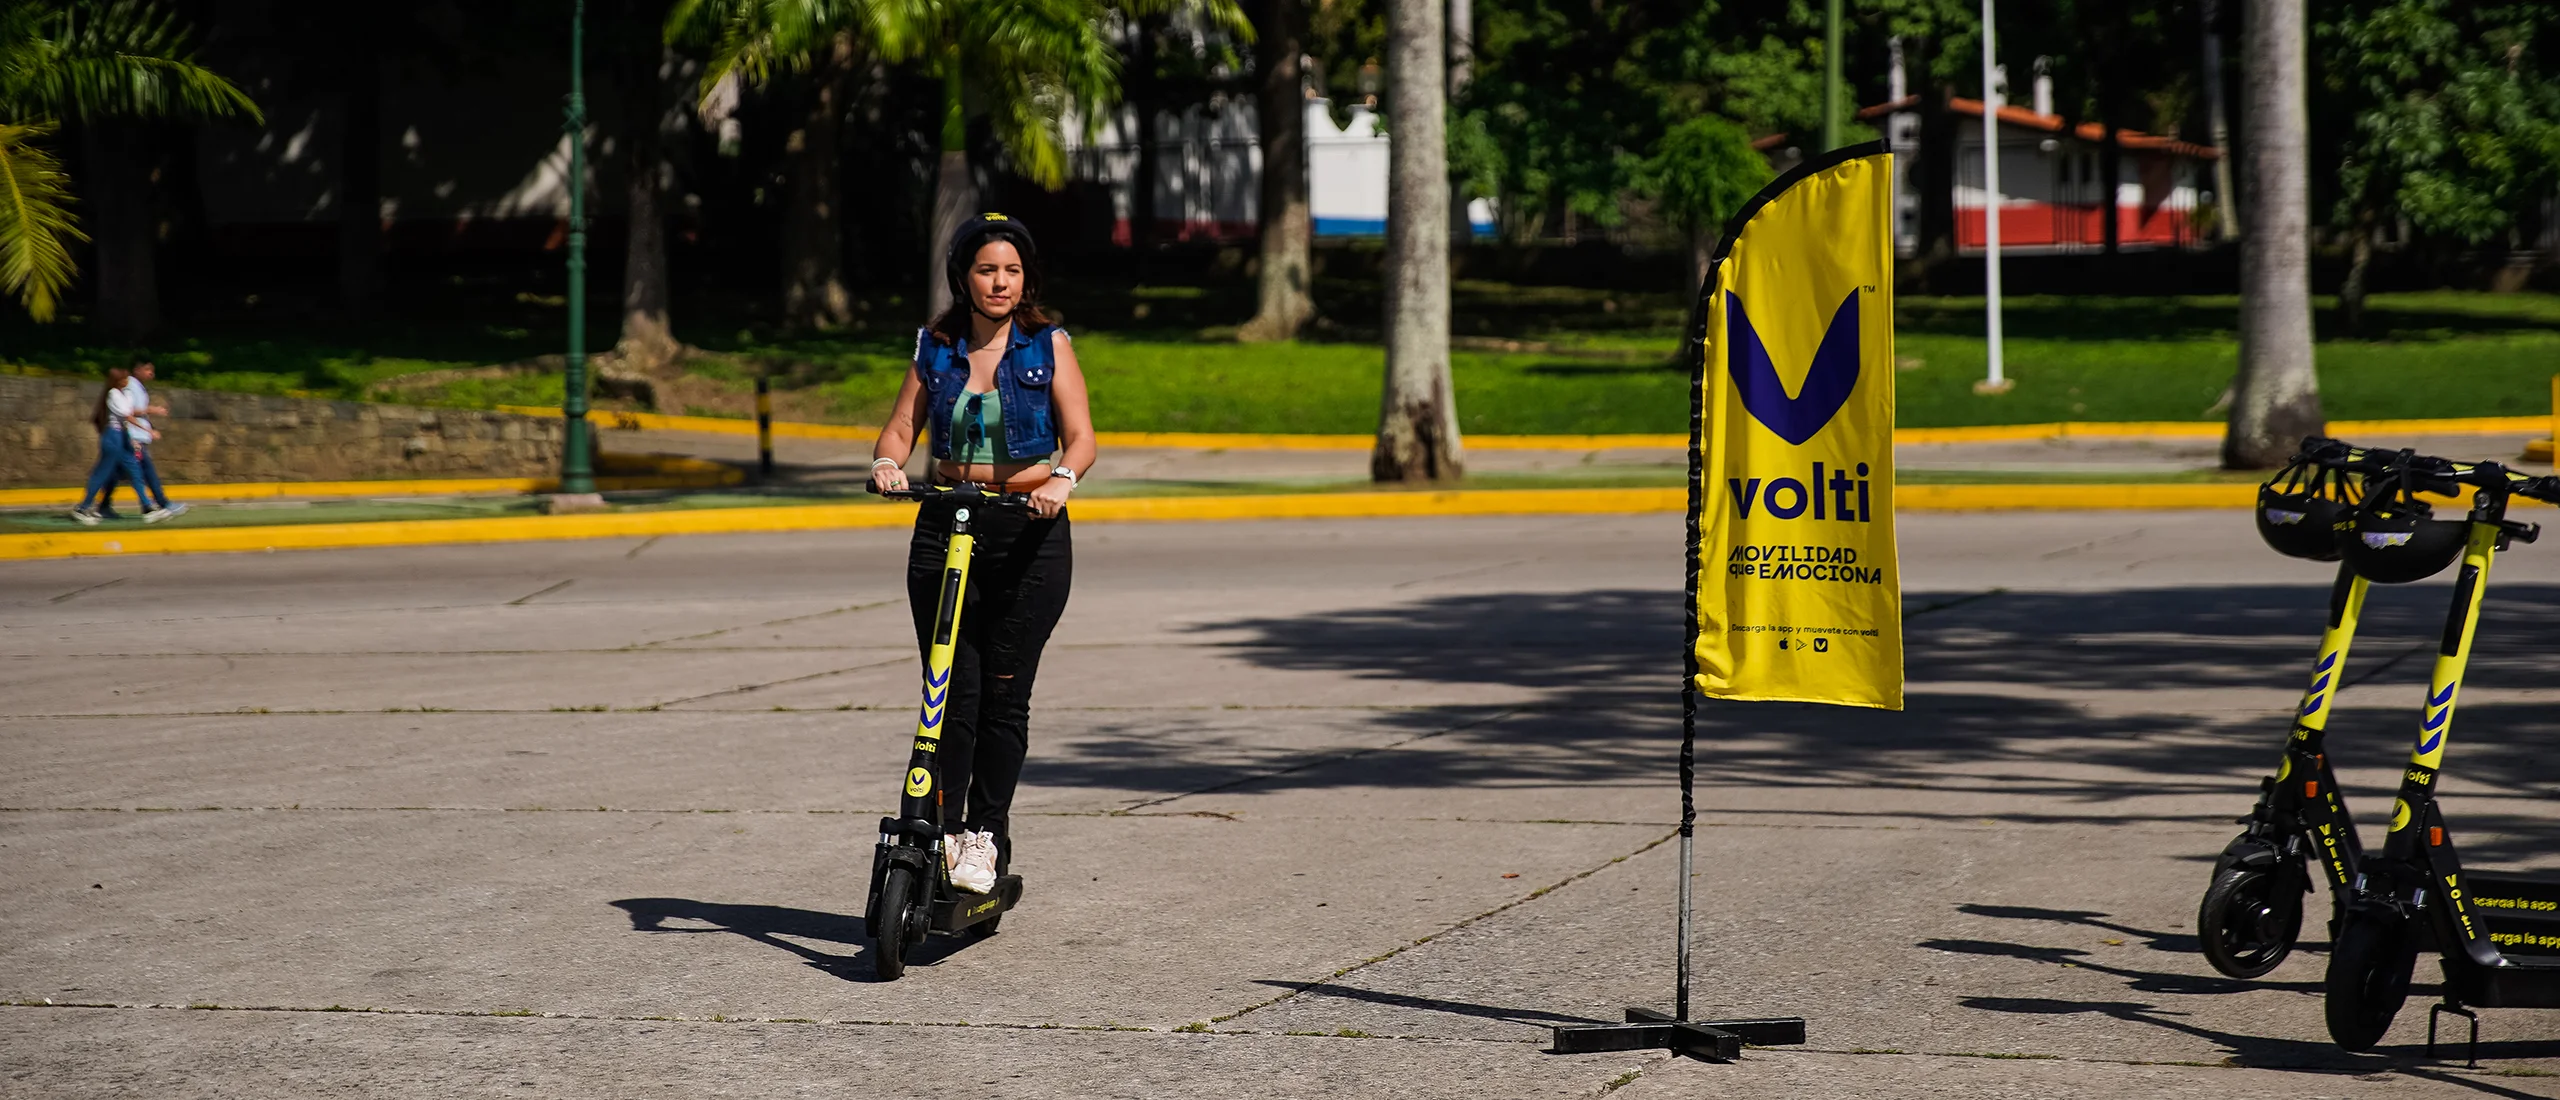 Caracas se Electrifica La Revolución de Volti en la Movilidad Urbana y Su Compromiso con el Medio Ambiente